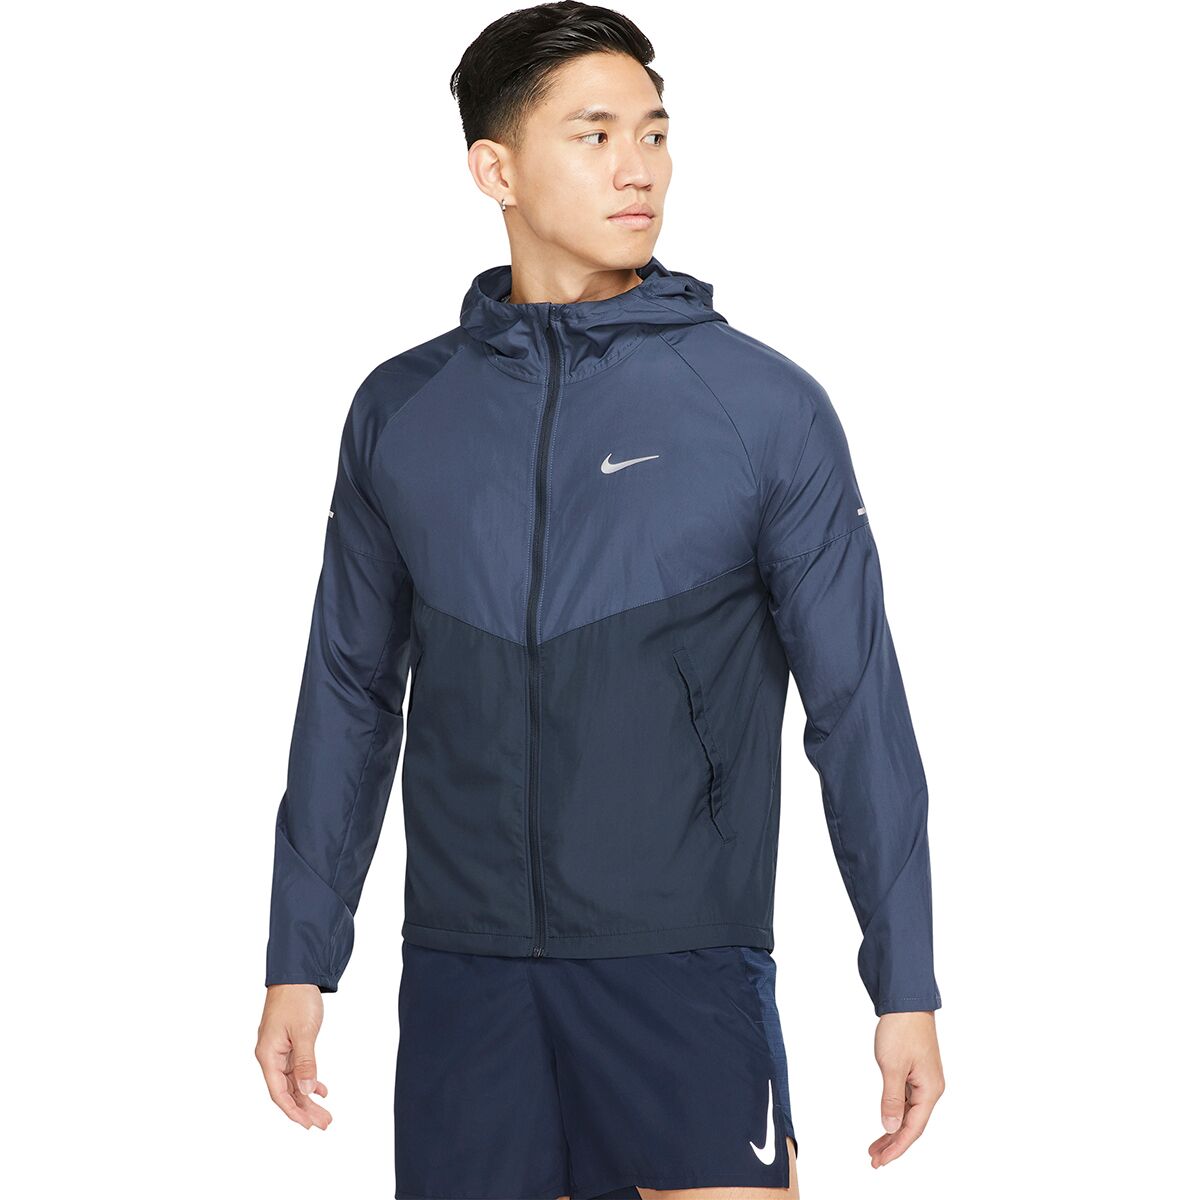 Repel Miler Jacket - Men's by Nike | US-Parks.com